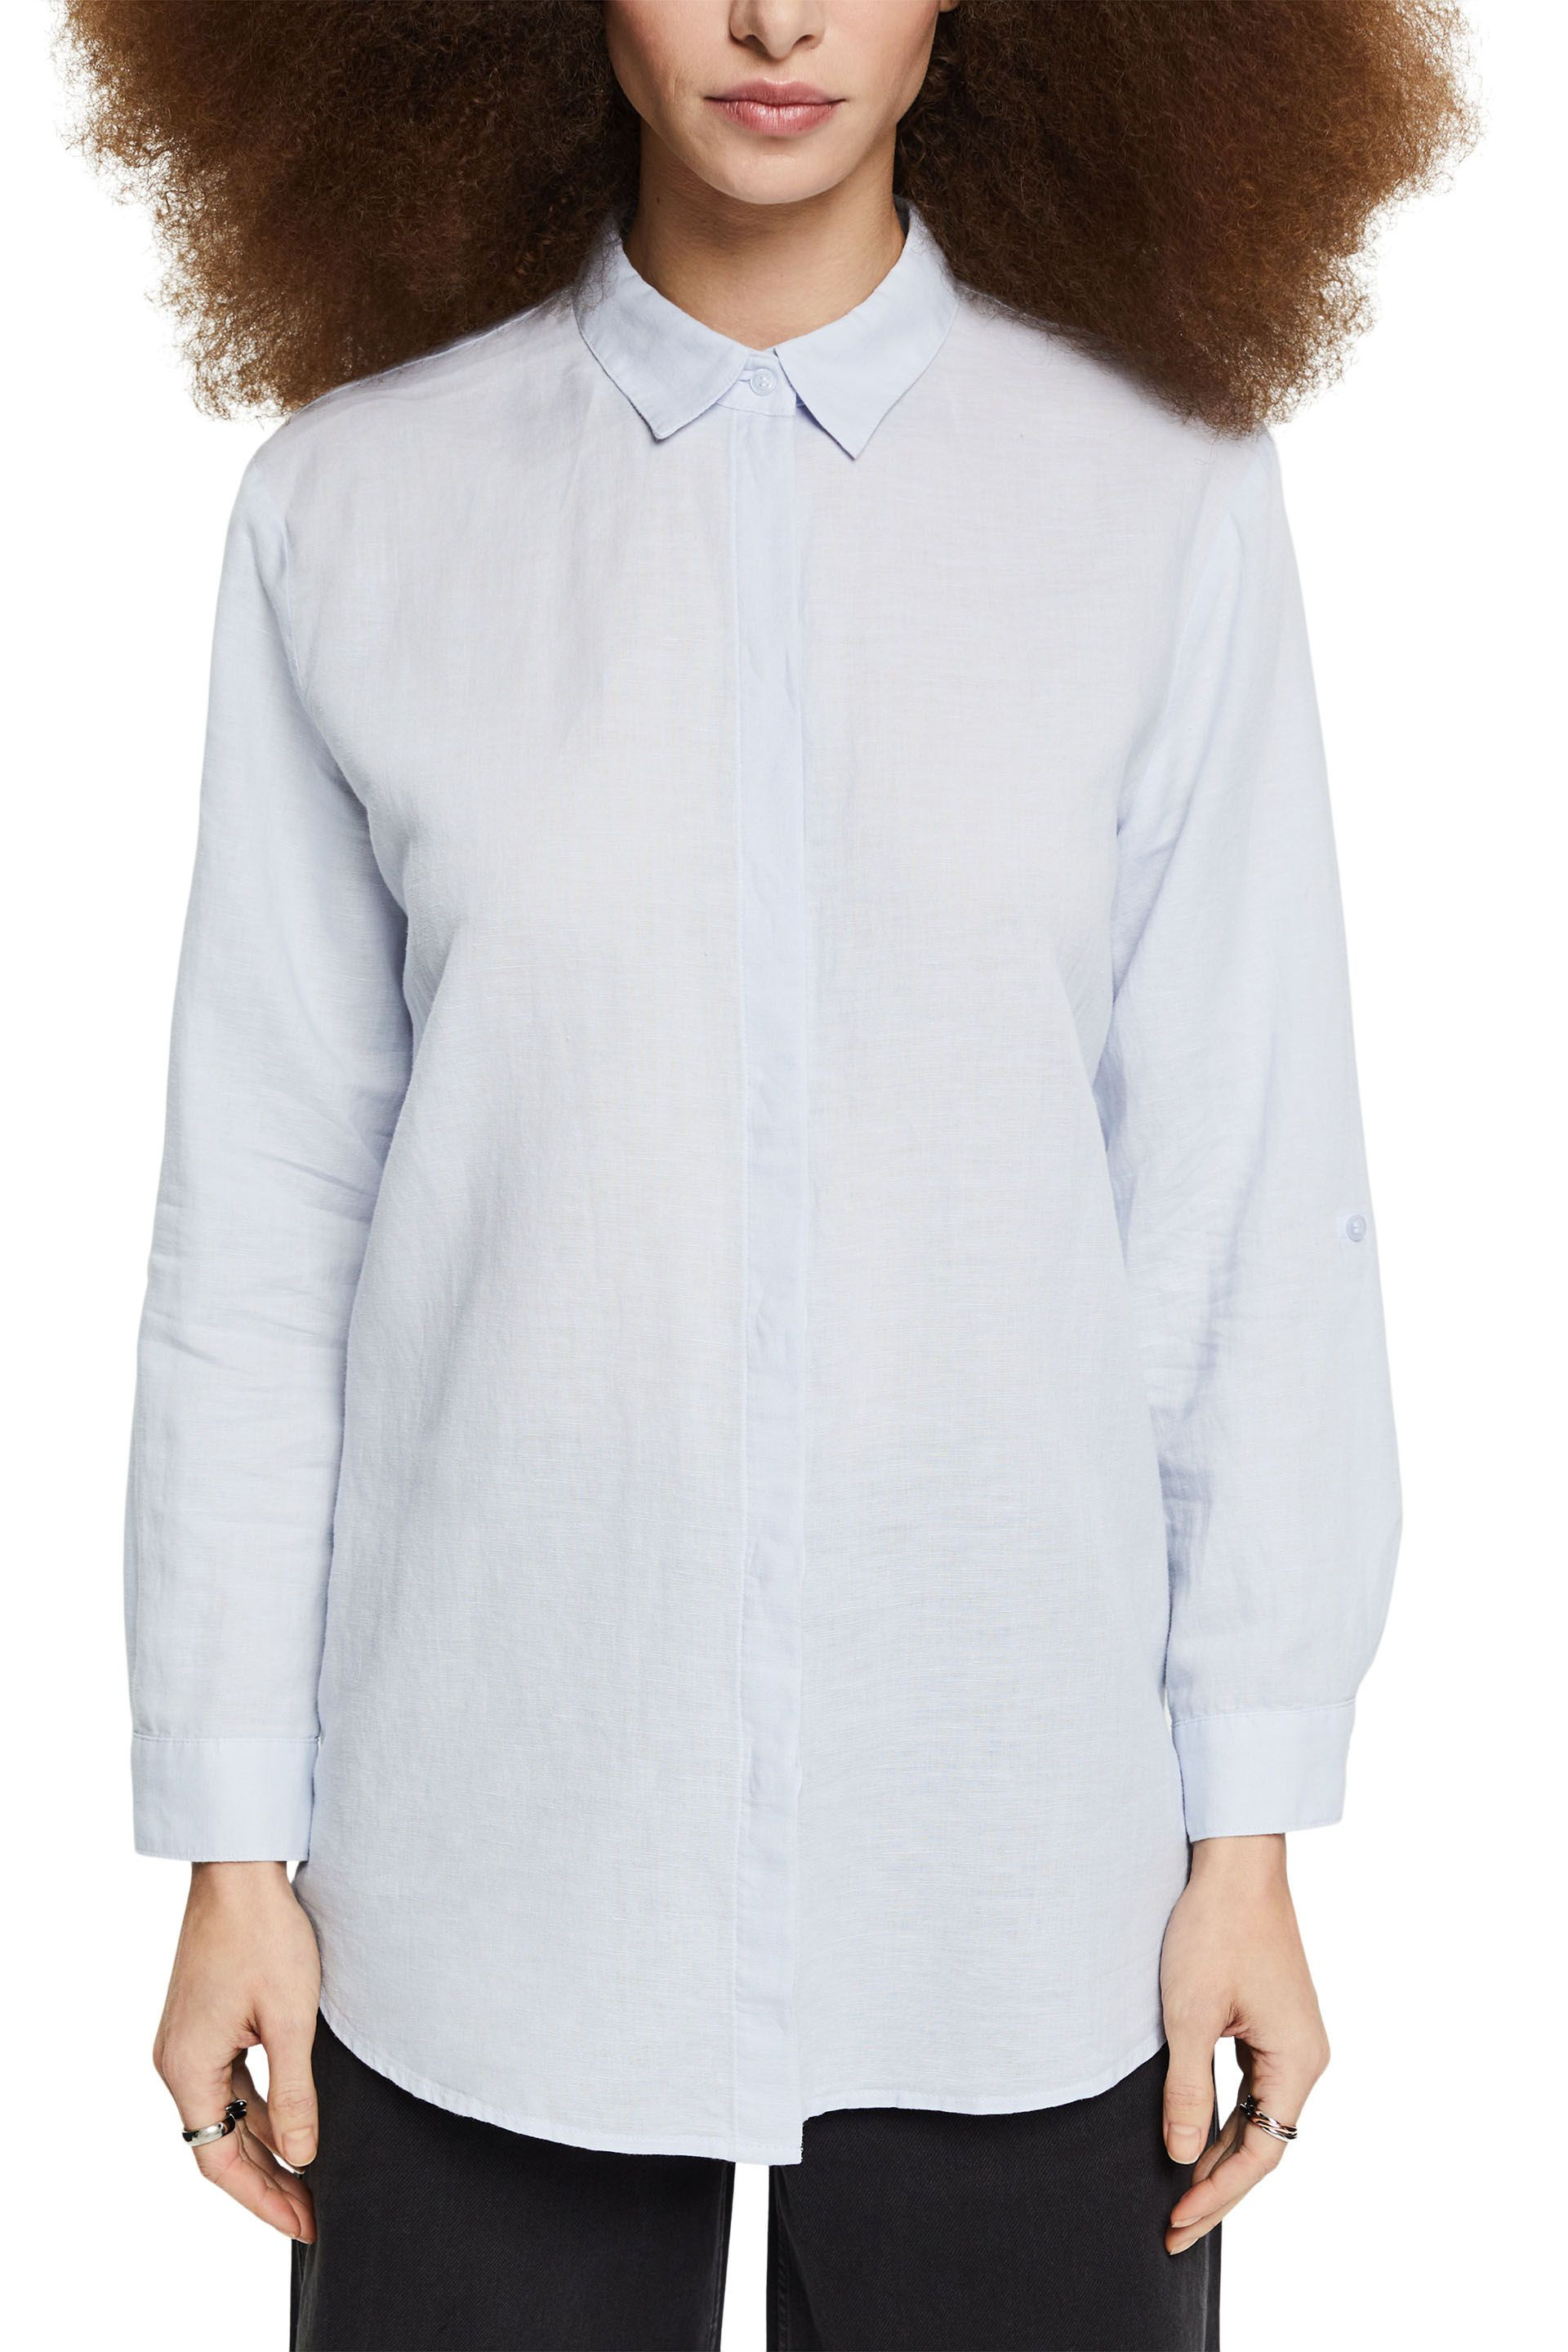 Linen blend shirt, Light Blue, large image number 1